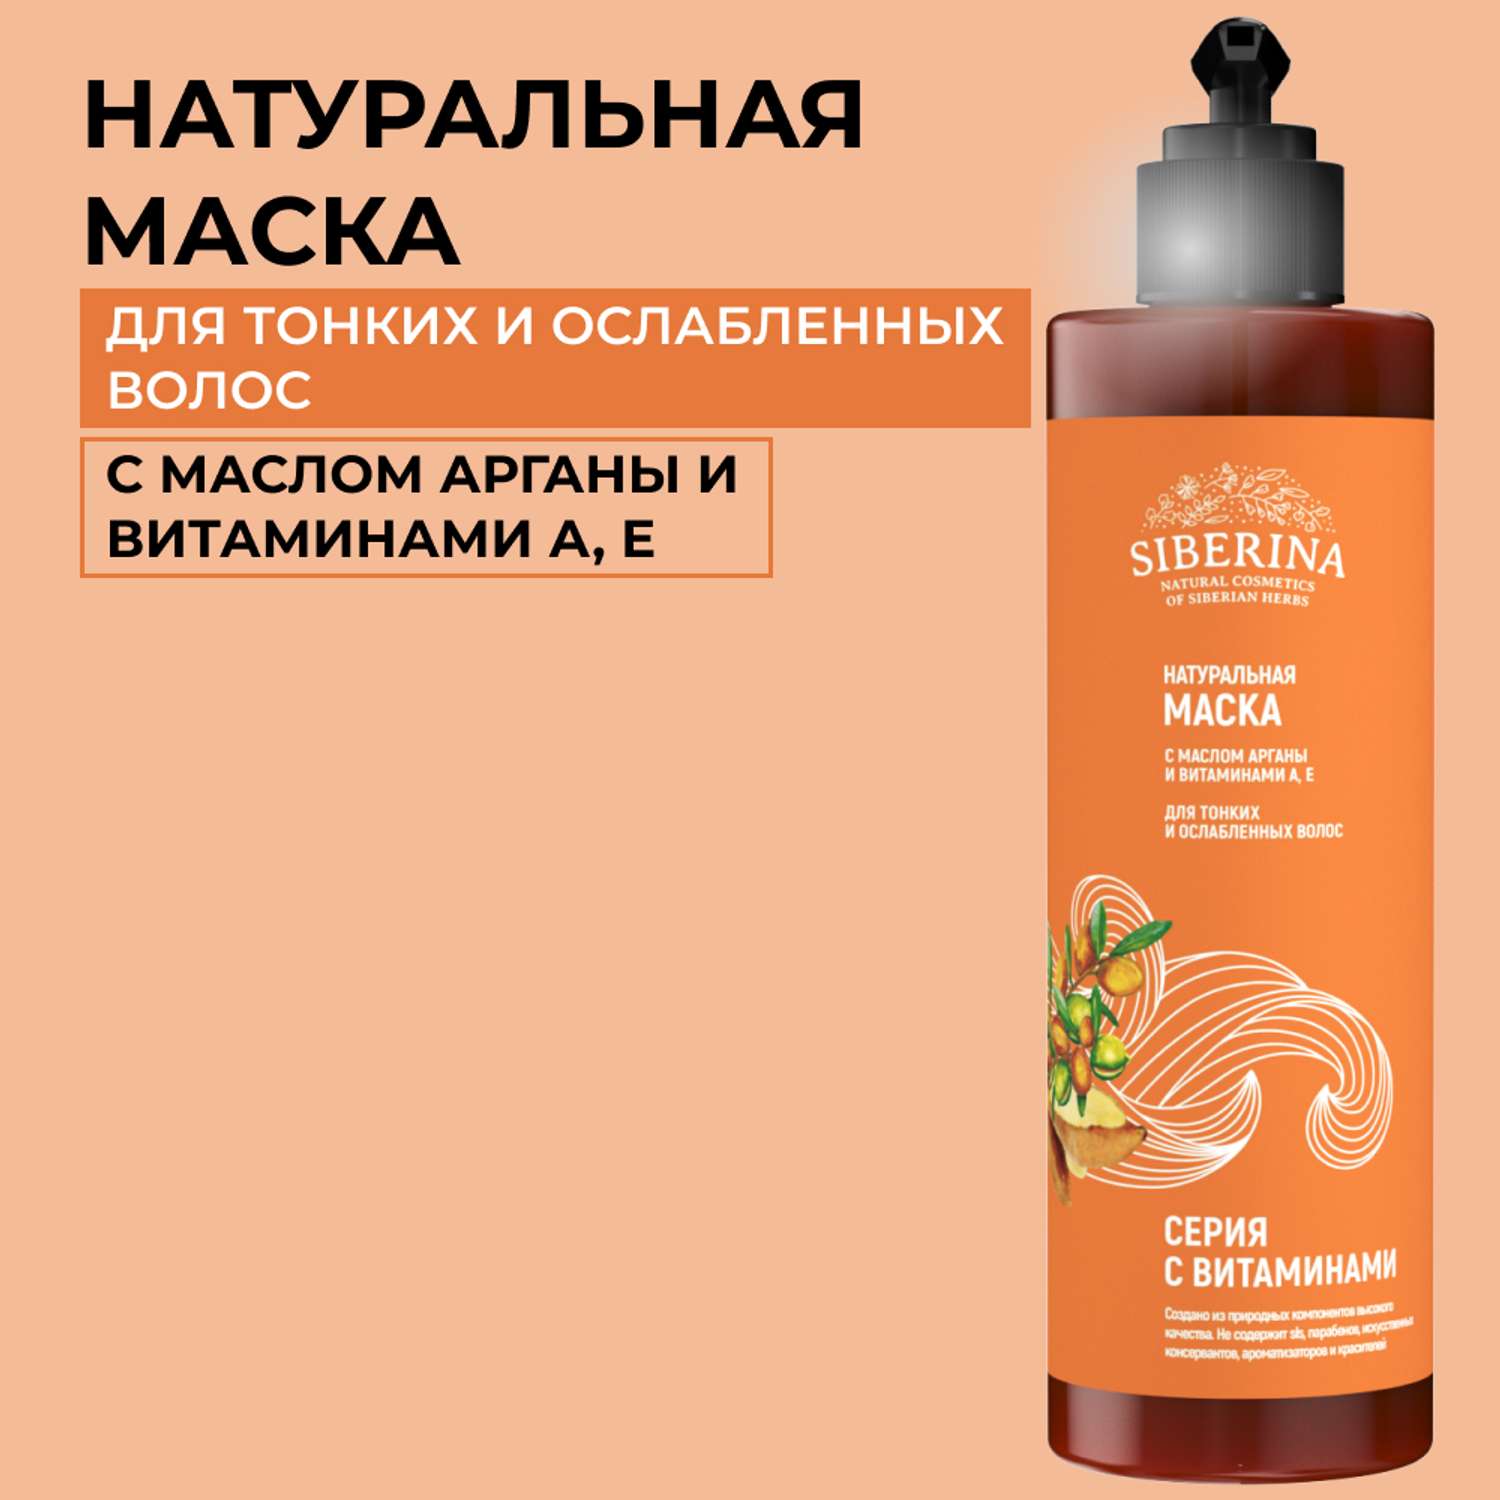 Маска Siberina натуральная с витаминами для тонких и ослабленных волос 200 мл - фото 1